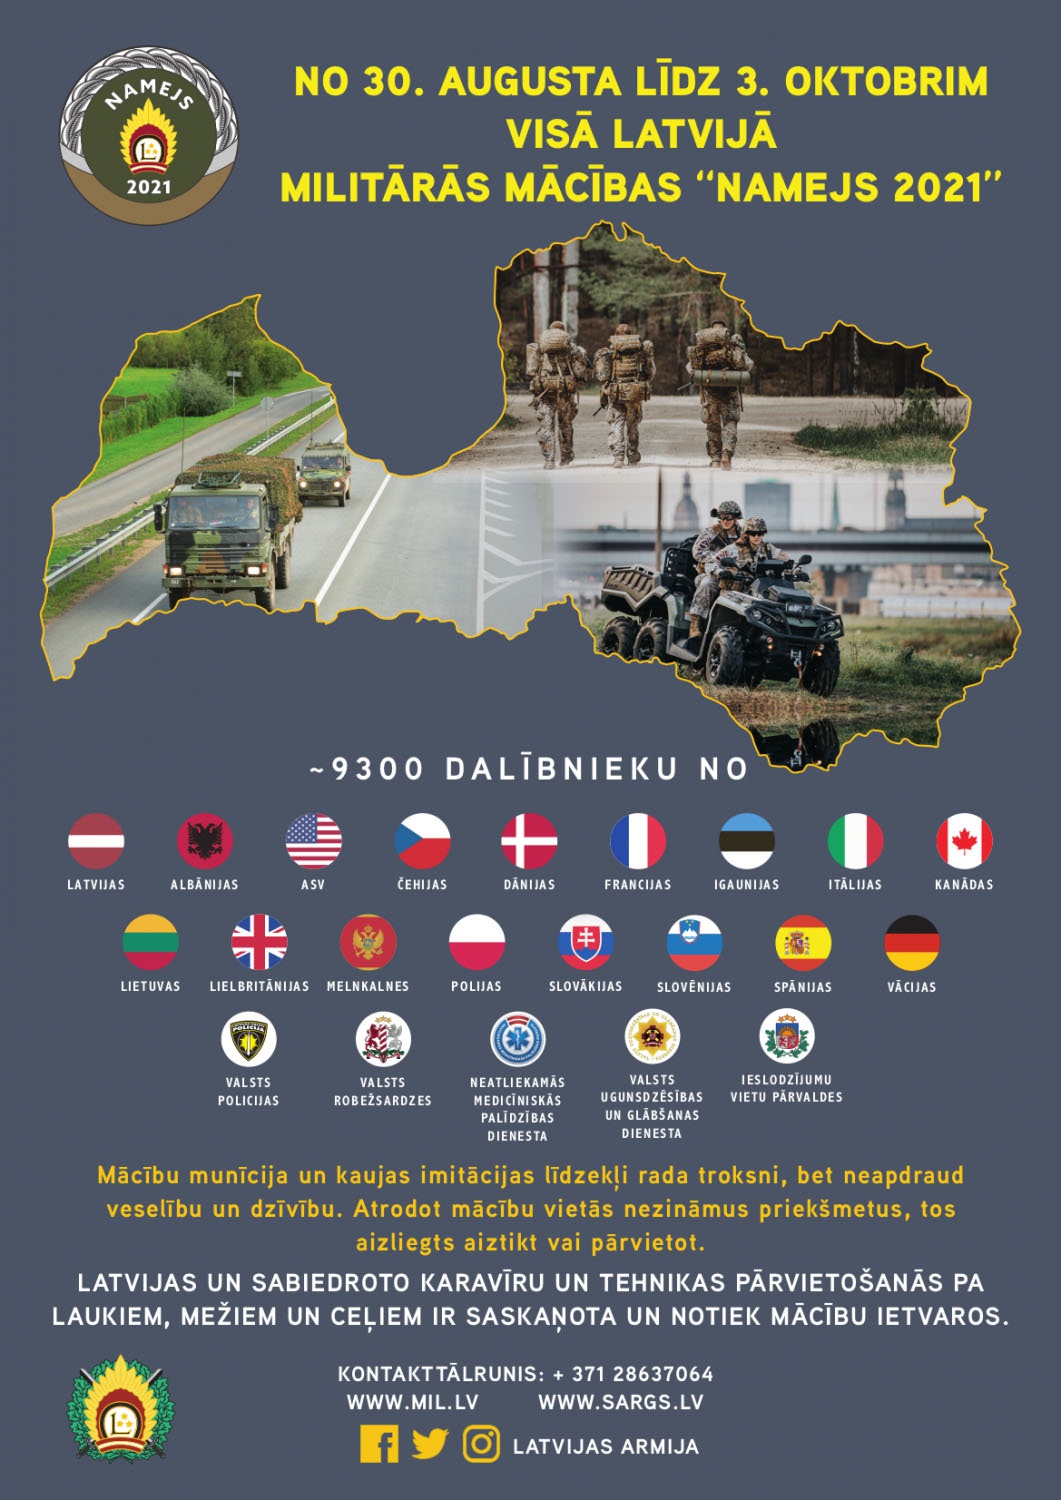 В учении Namejs-2021 принимают участие 9 000 солдат из Латвии, США, Великобритании, Канады, Германии, Польши, Эстонии, Литвы, Испании, Италии, Дании и Чехии.